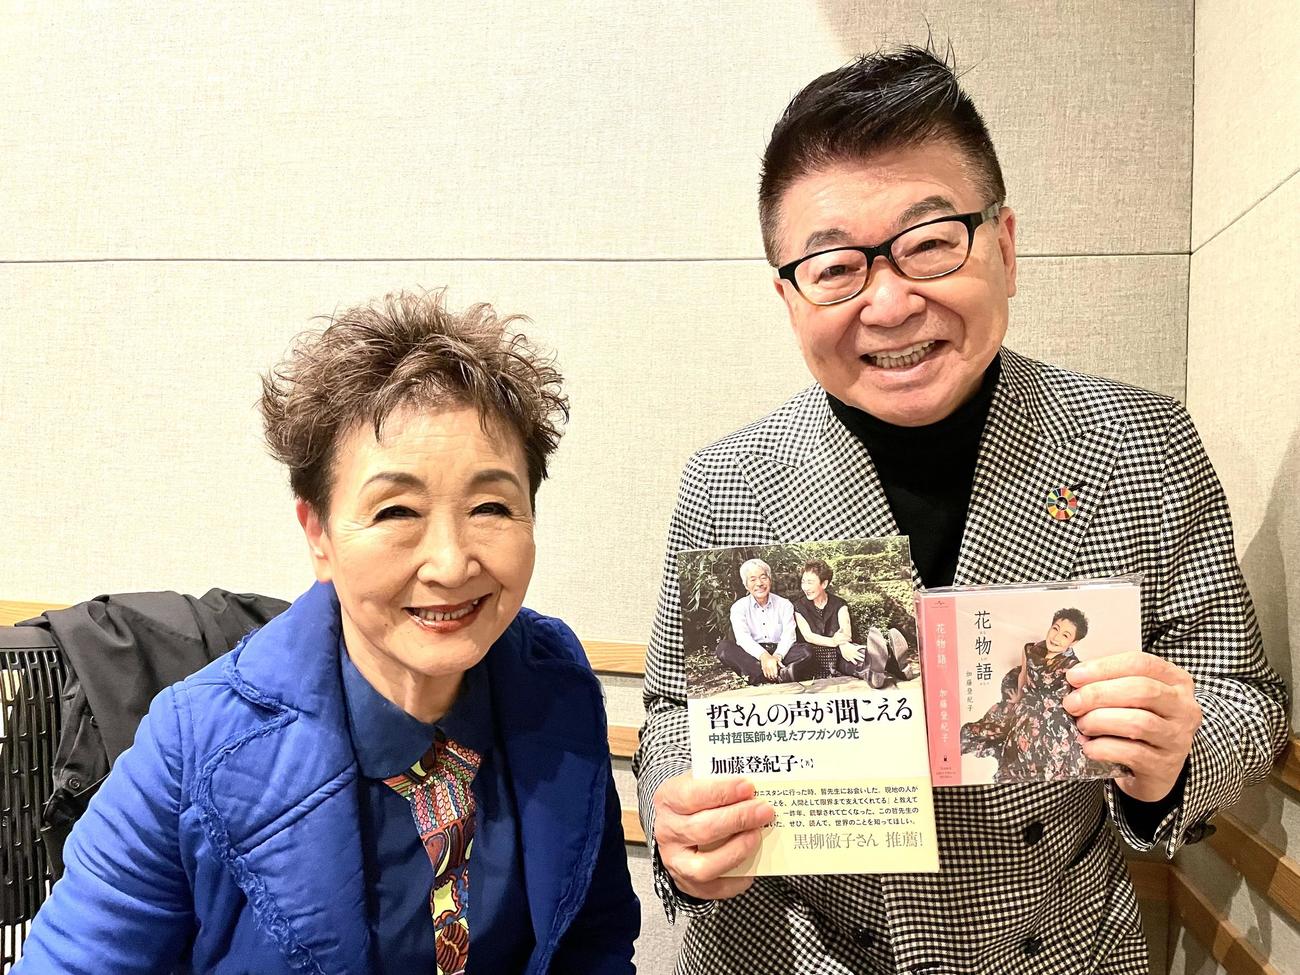 1カ月早い早産で命が危なかったことを告白した加藤登紀子(左)と加藤の本、CDを手にする生島ヒロシ